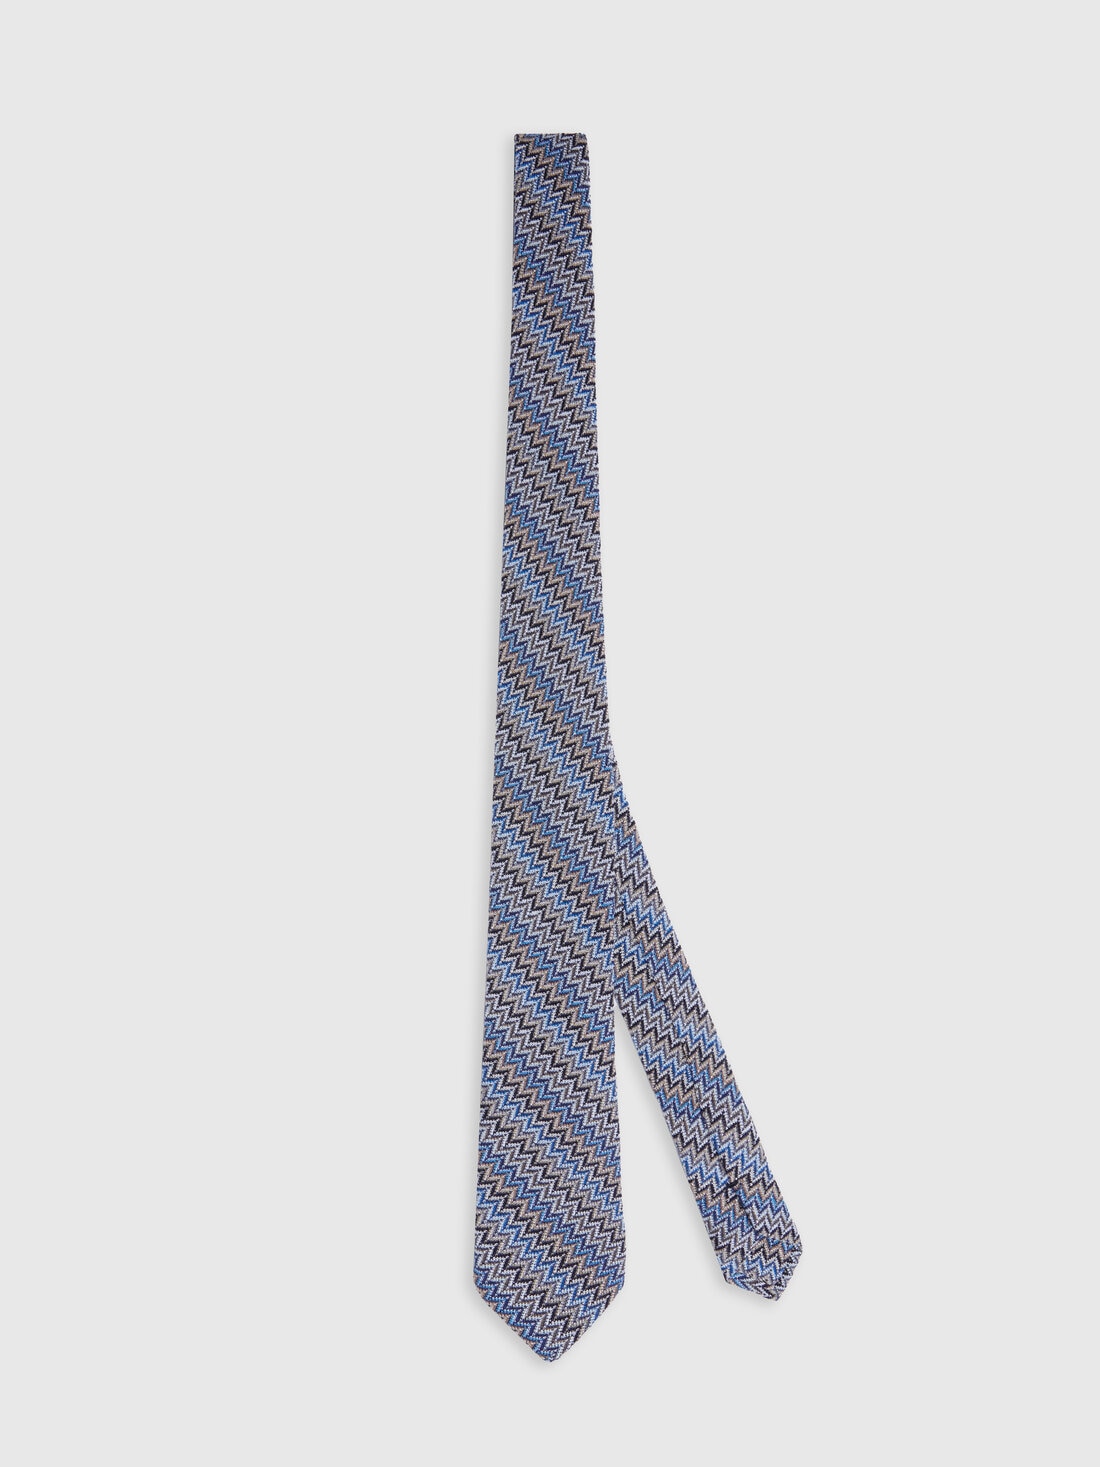 Krawatte aus Viskose und Baumwolle mit Zickzackmuster, Mehrfarbig  - 8053147141855 - 0